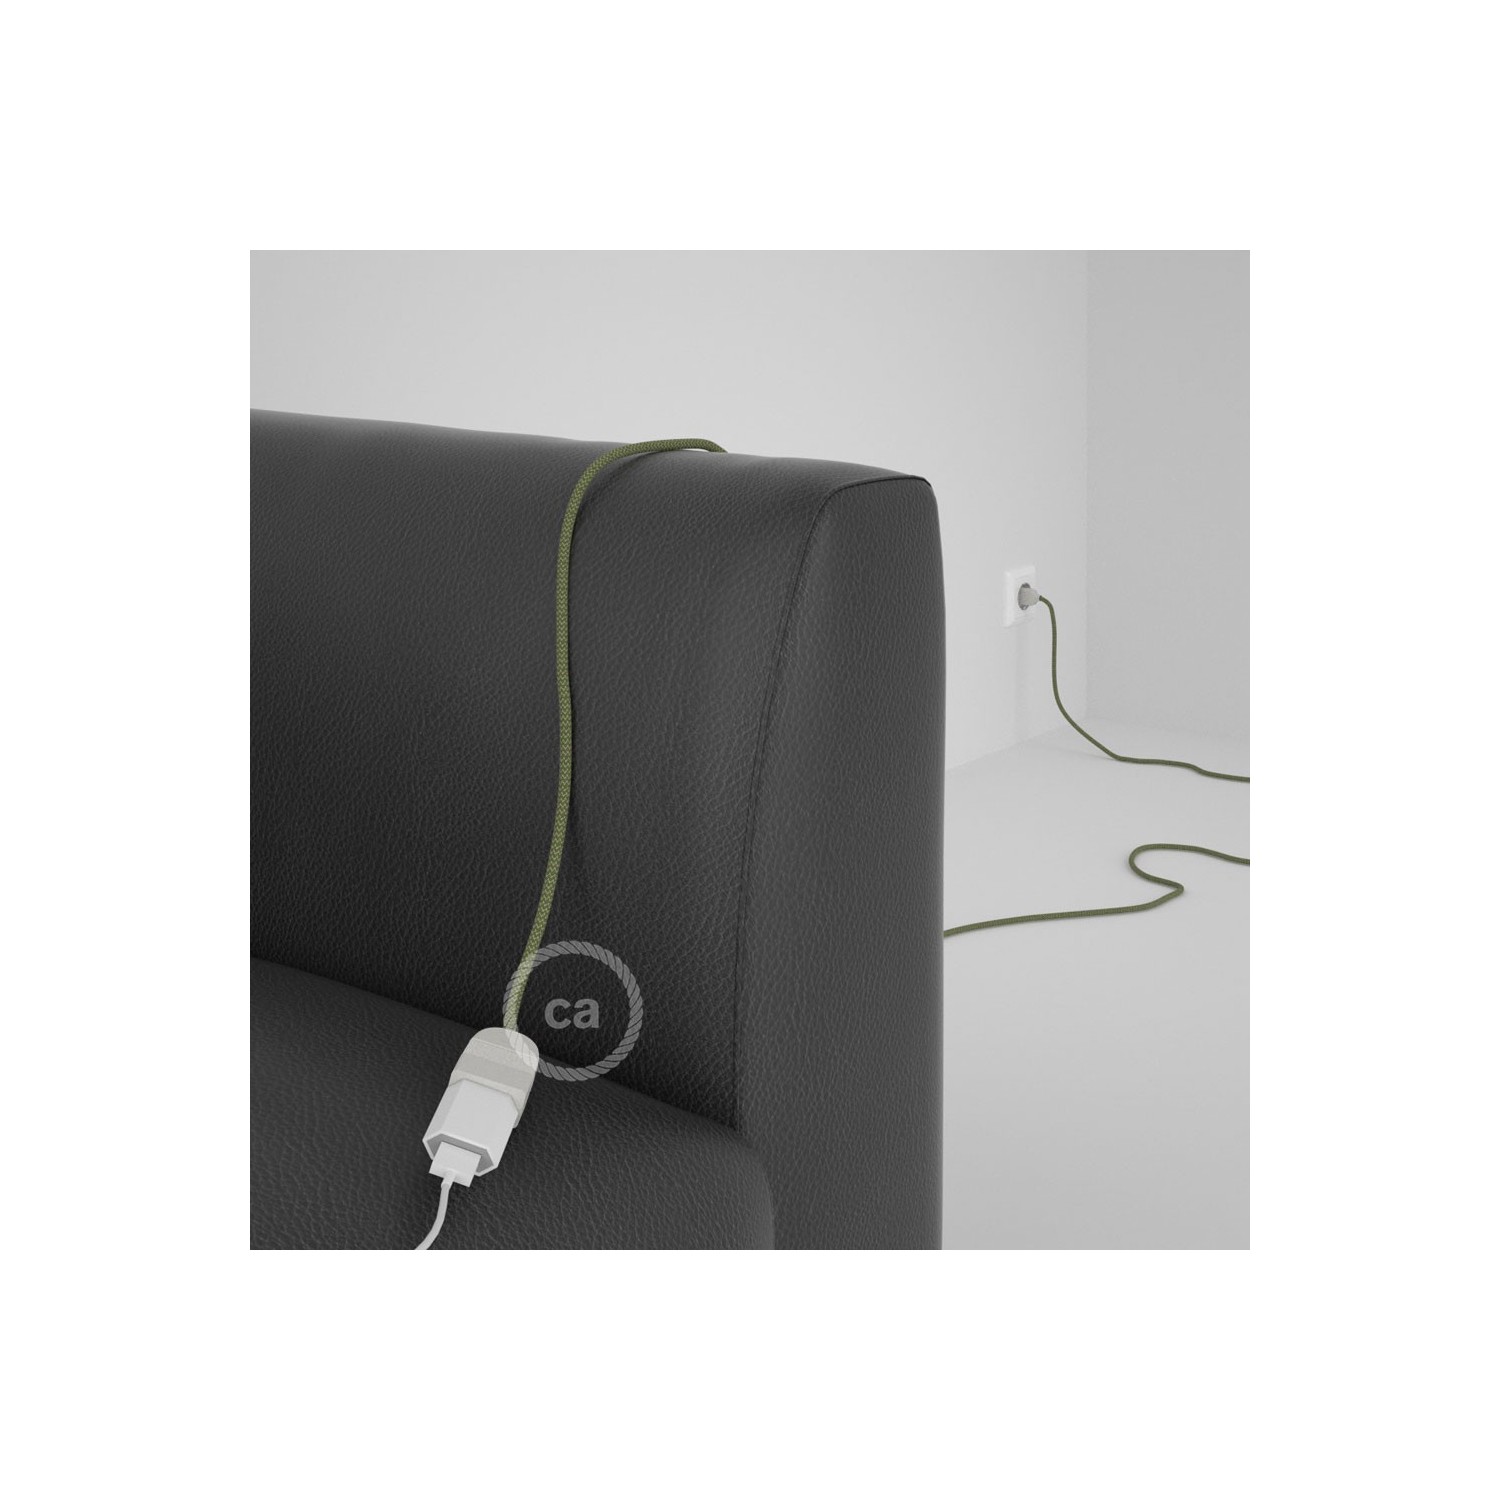 Rallonge électrique avec câble textile RD72 Coton et Lin Naturel ZigZag Vert Thym 2P 10A Made in Italy.